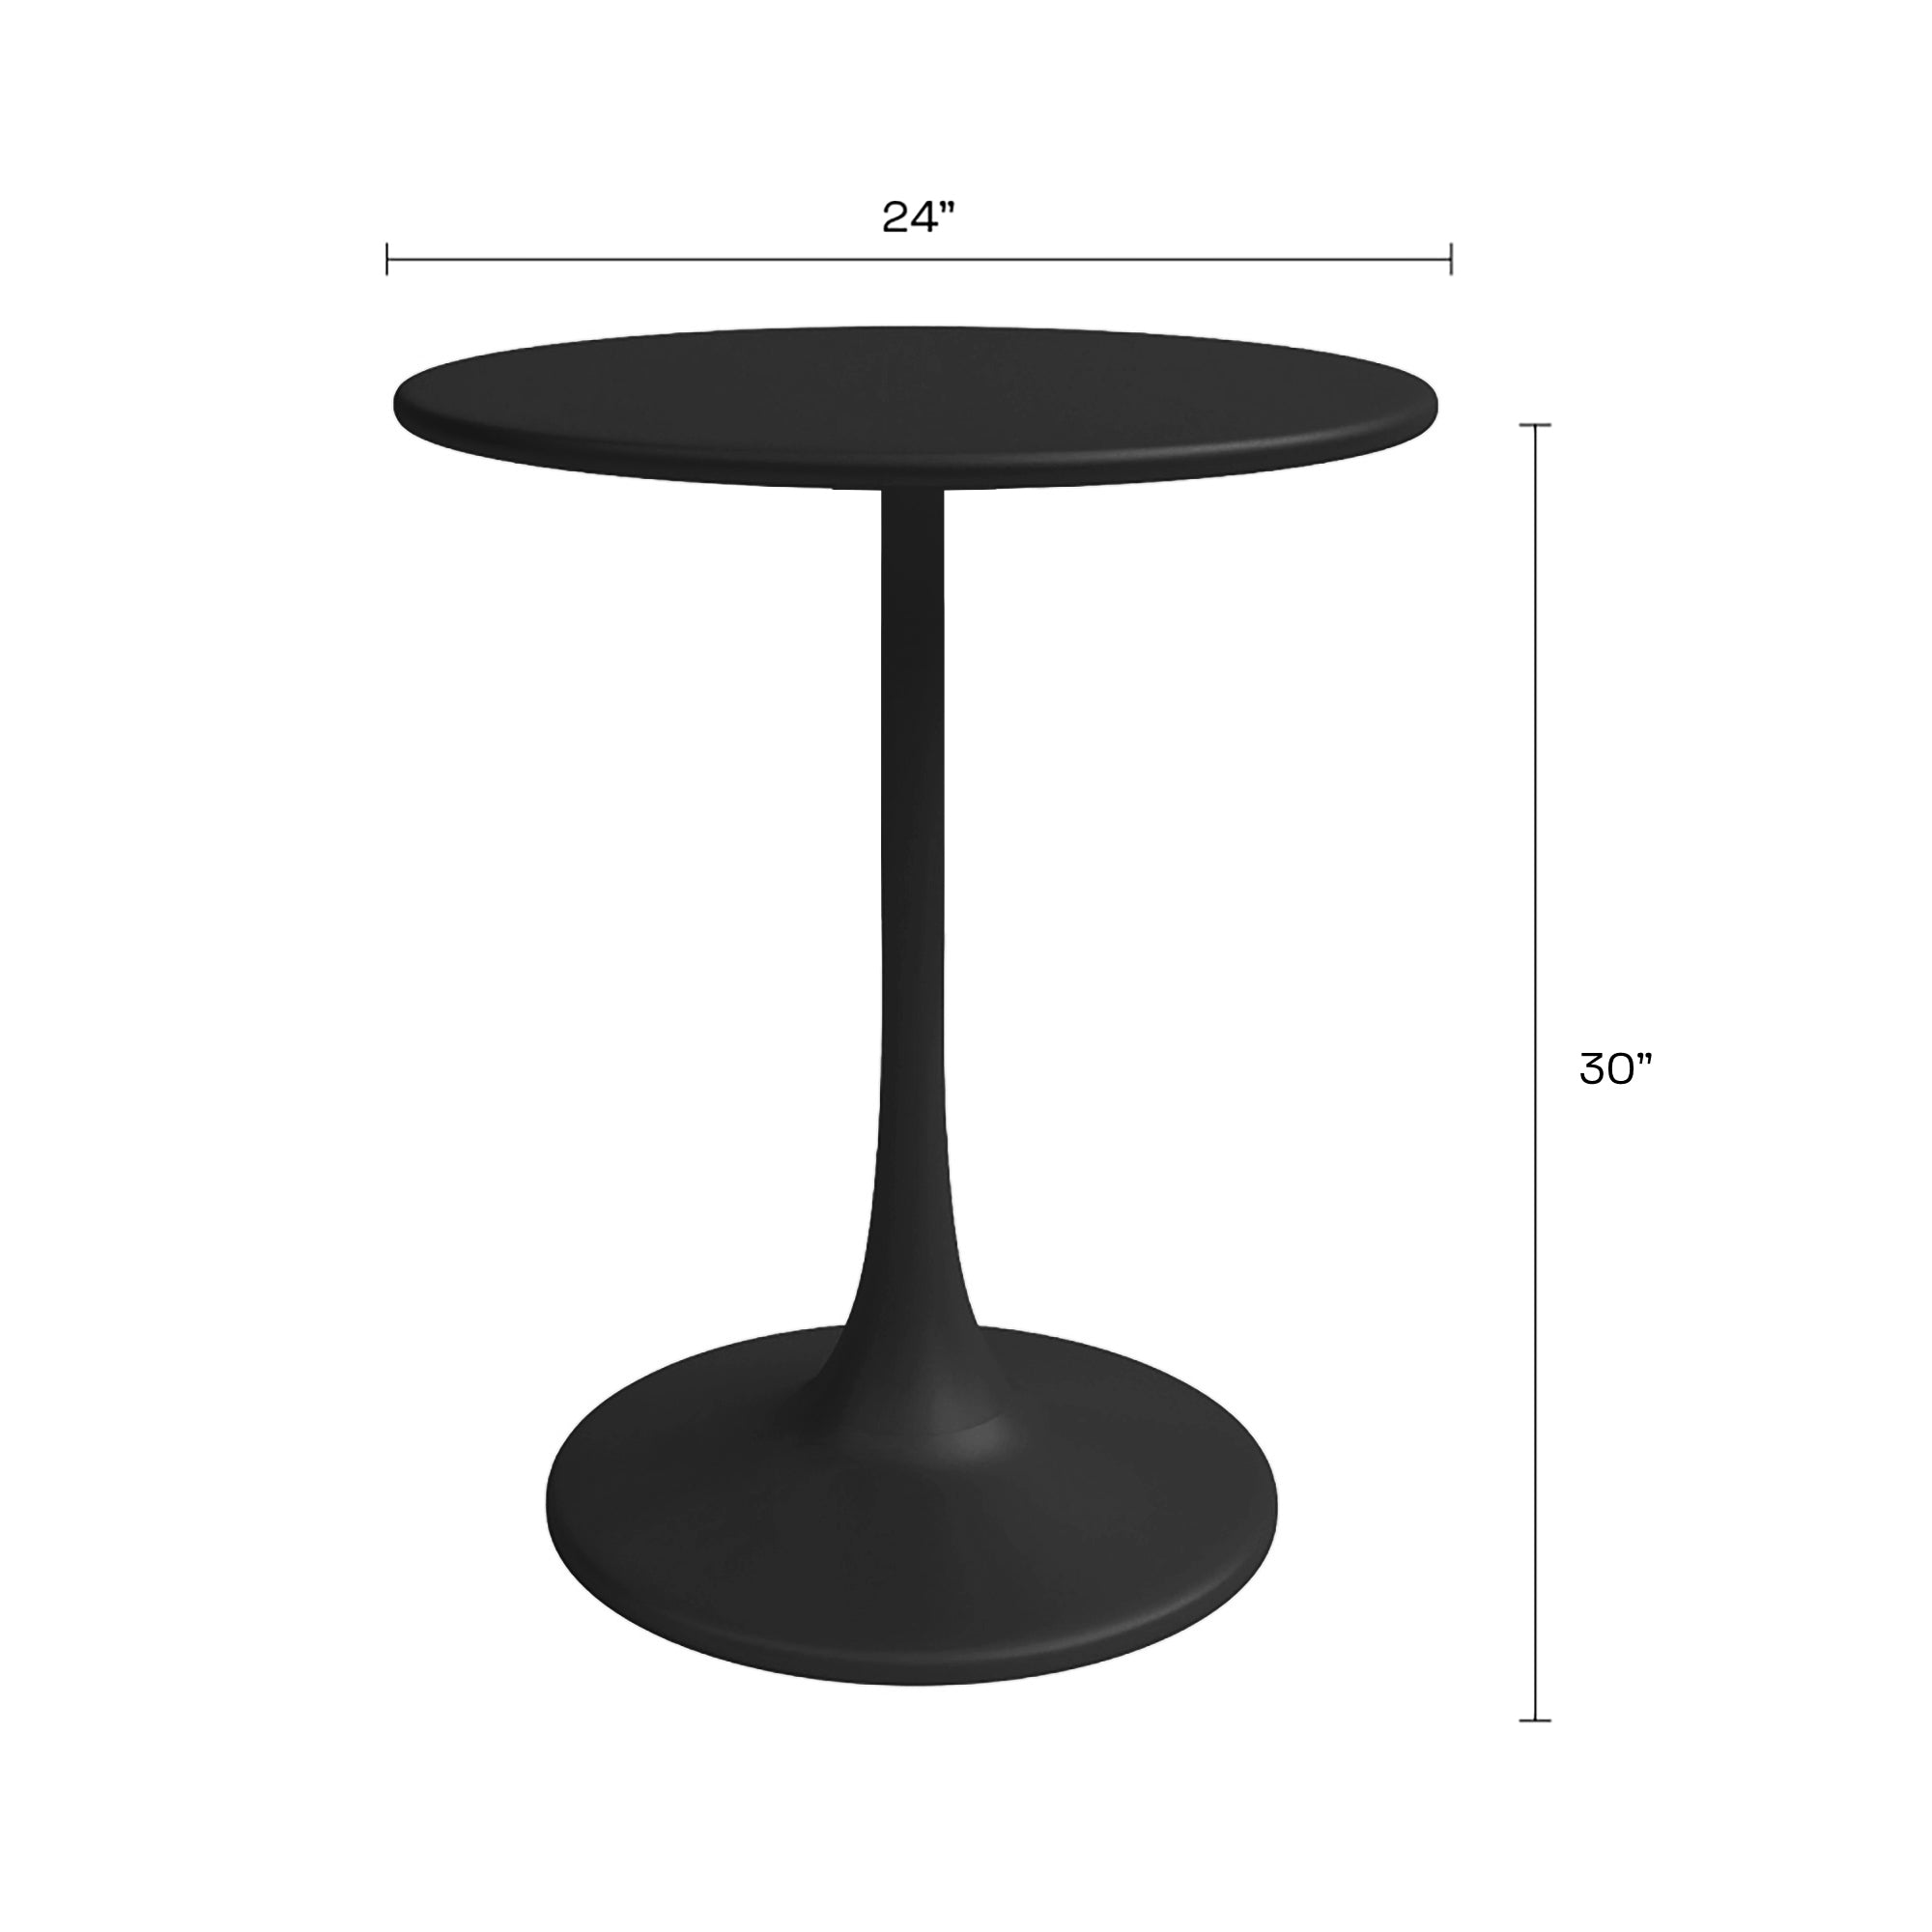 Kurv™ Series Bistro Table + Kurv™ Dining Chair - Set of 2